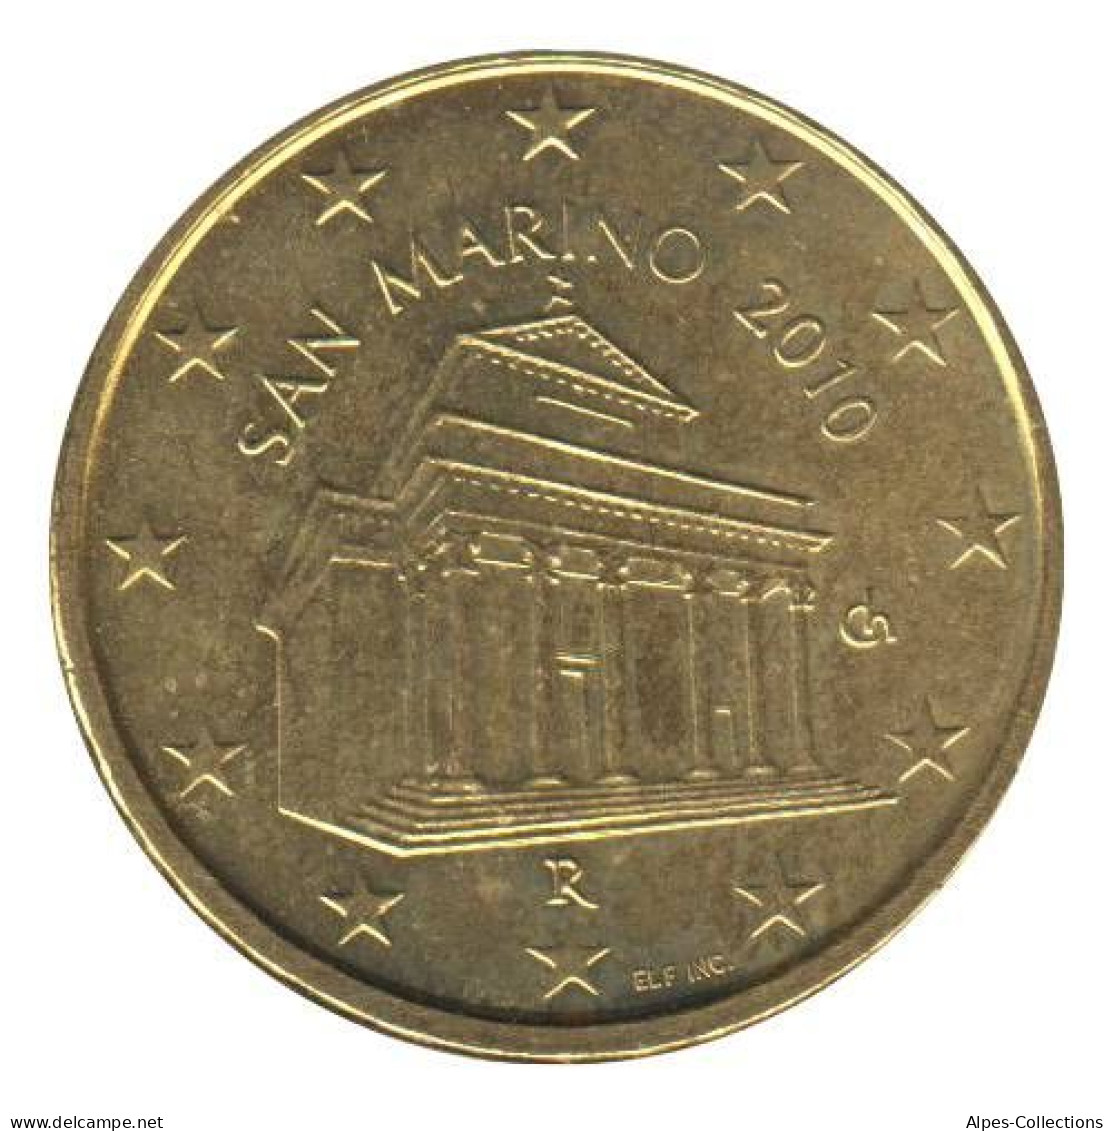 SA01010.1 - SAINT MARIN - 10 Cents - 2010 - San Marino